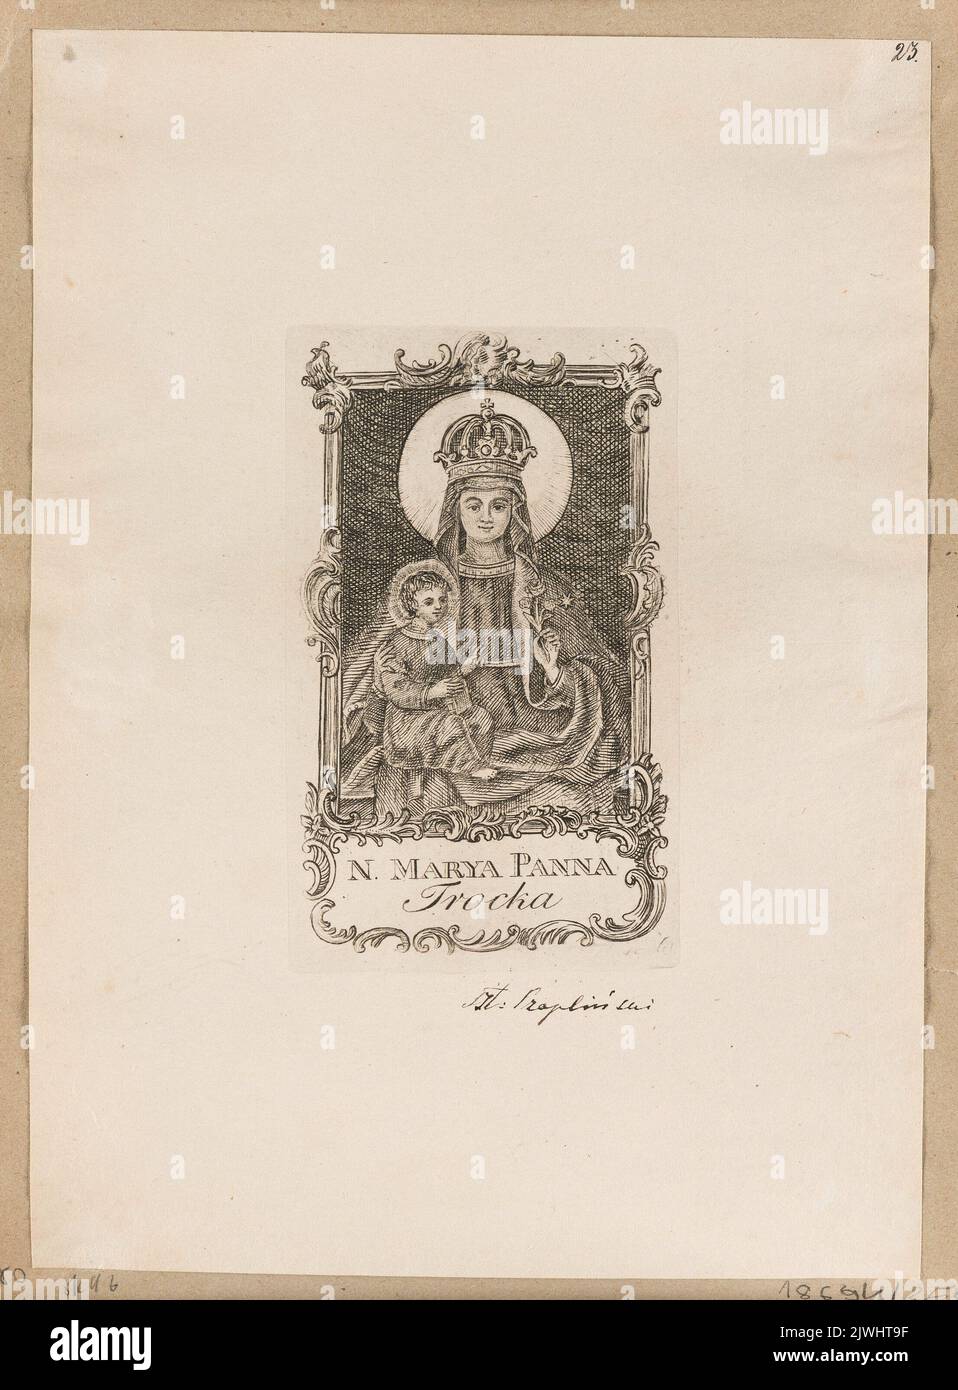 Our Lady of Trakai. Tyszkiewicz, Konstanty (1806-1868), merchant employer, Marcinowski, Antoni (Wilno ; drukarnia ; 1817-1862), printing house, Czapliński, Mikołaj (fl. ca 1710-1750), graphic artist Stock Photo